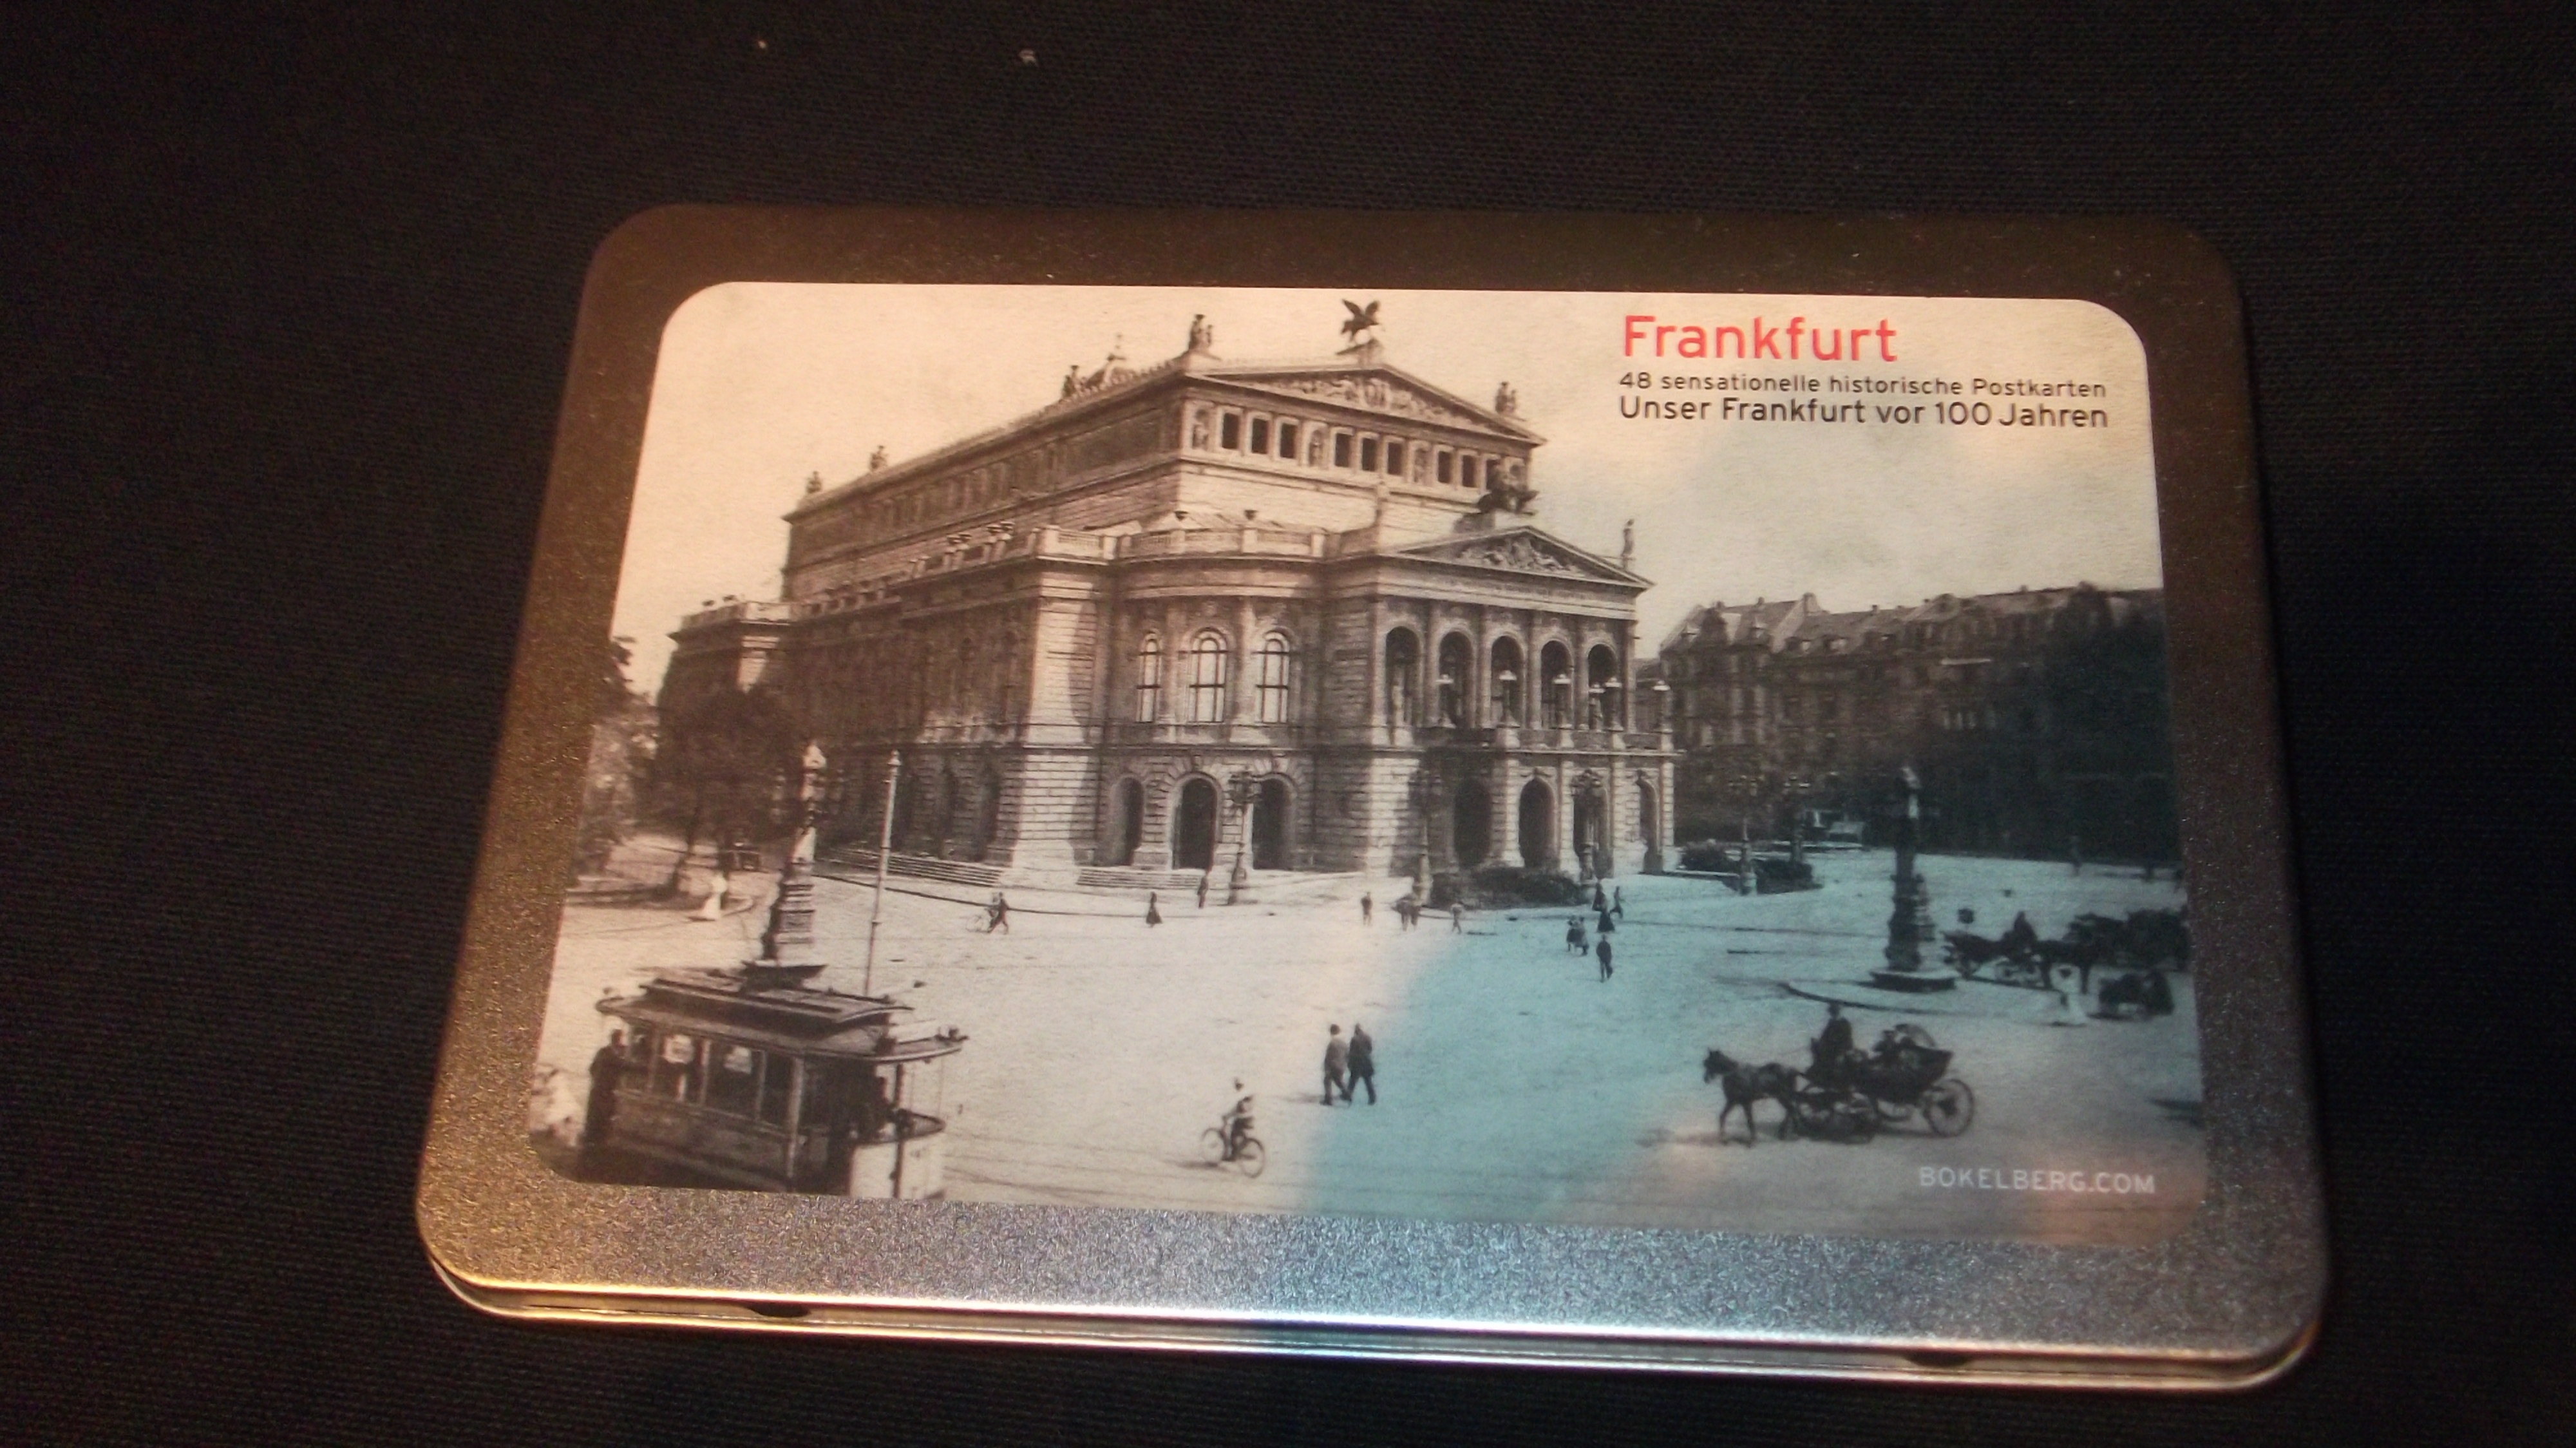 Städtebox, ein Produkt dieses Fotoverlages - hier Frankfurt